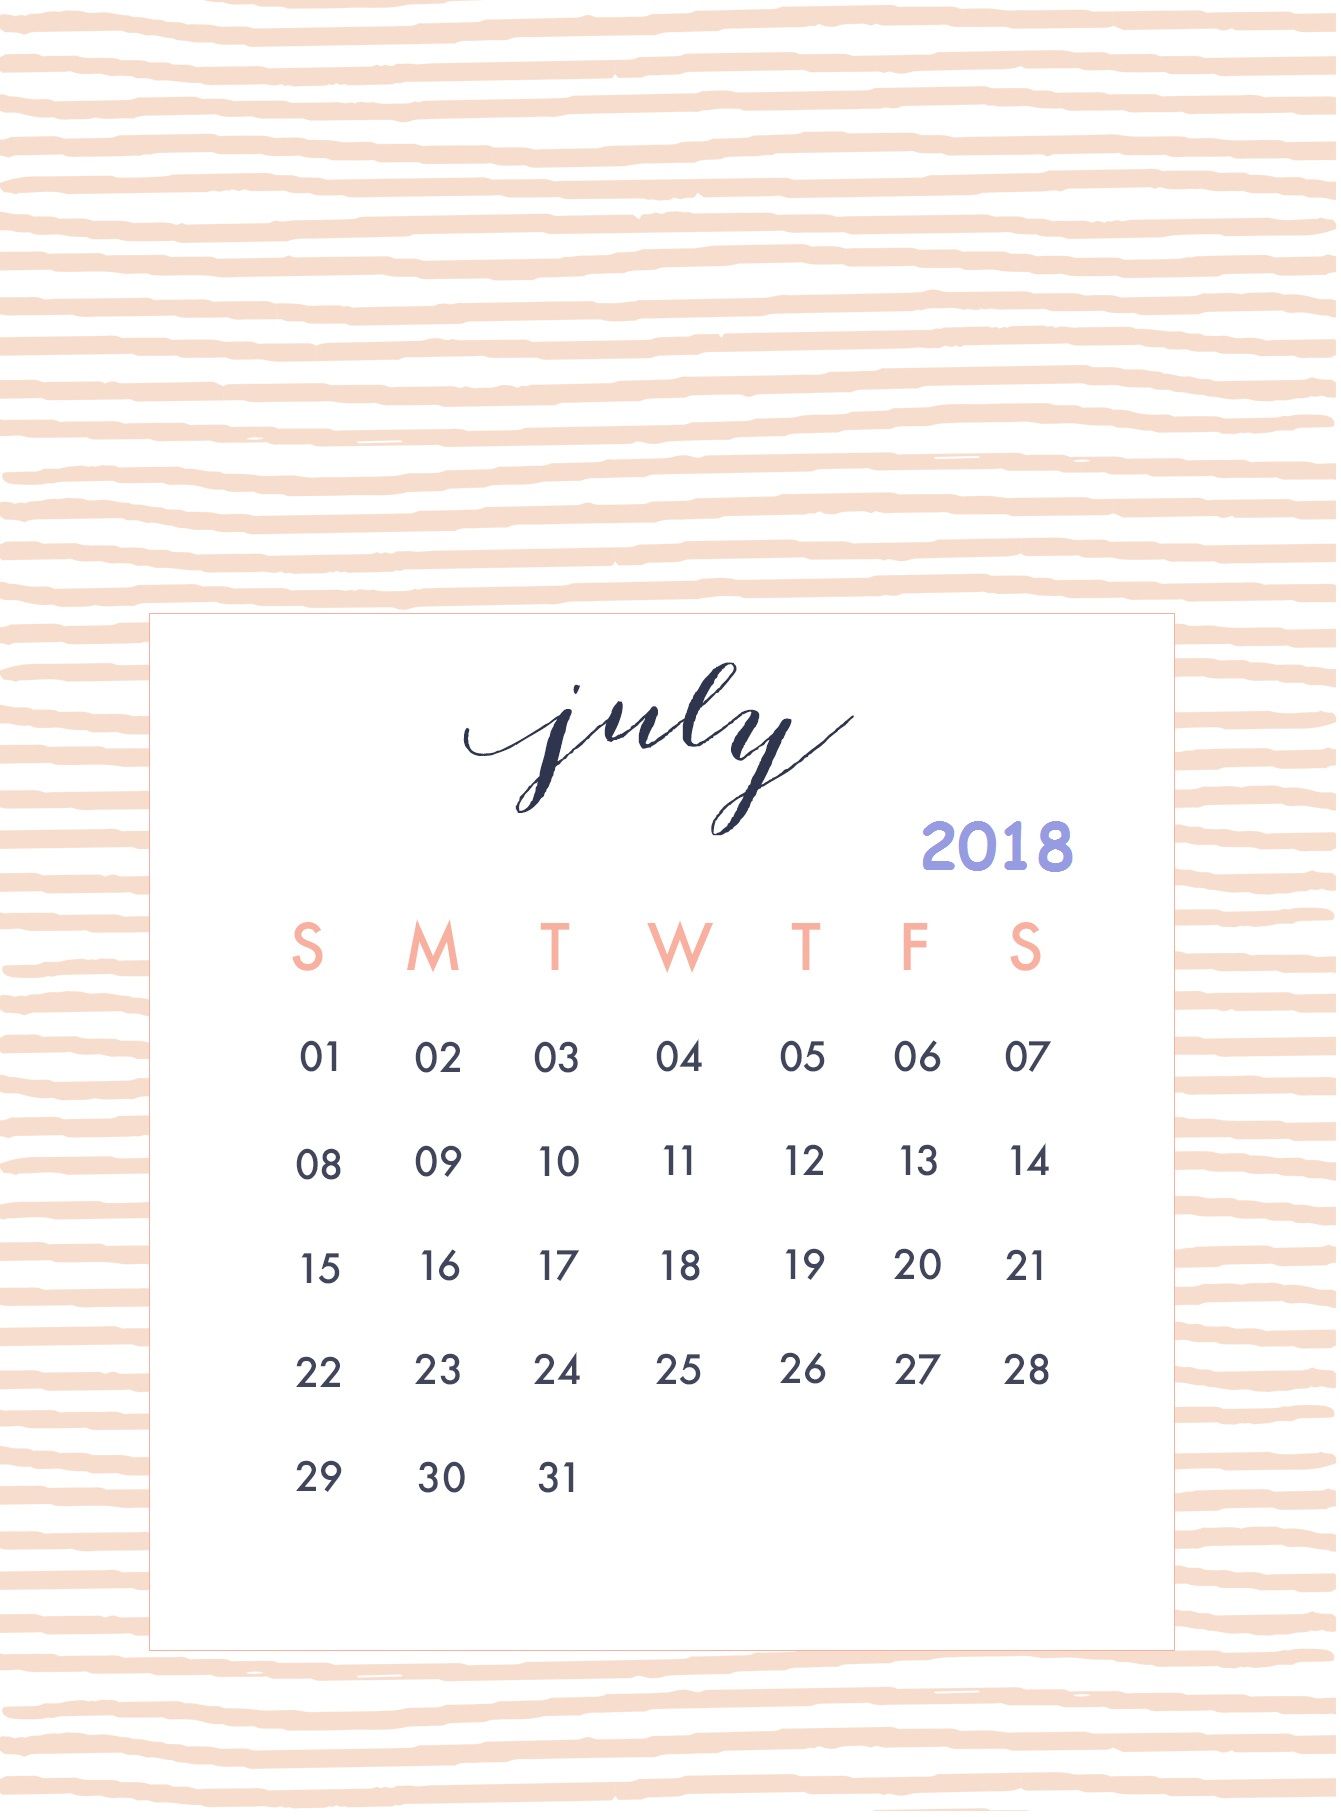 July 2018 iPhone Wallpaper Calendar Wallpaper in 2019 Calendar 1341x1817